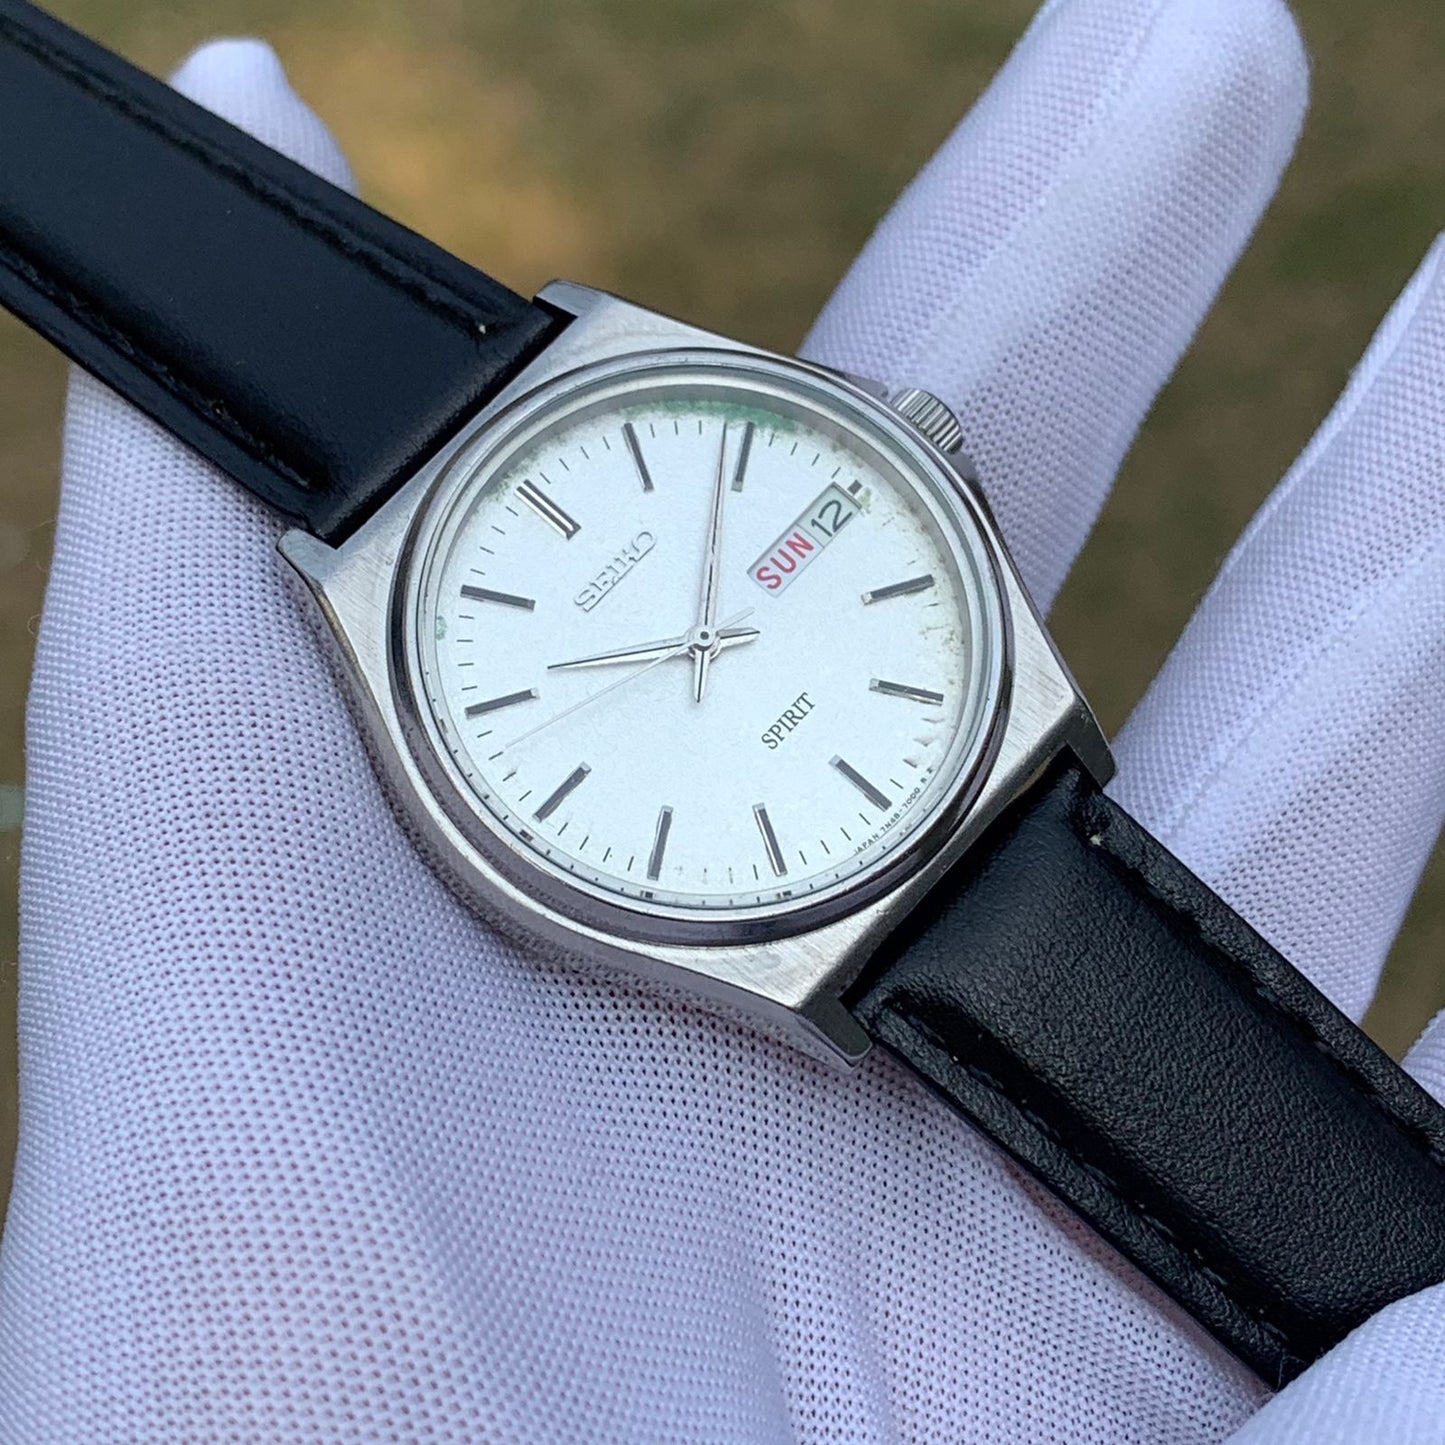 Vintage Seiko Spirit JDM Snowflake dial Japan Made Men's Quartz Watch 7N48-7000